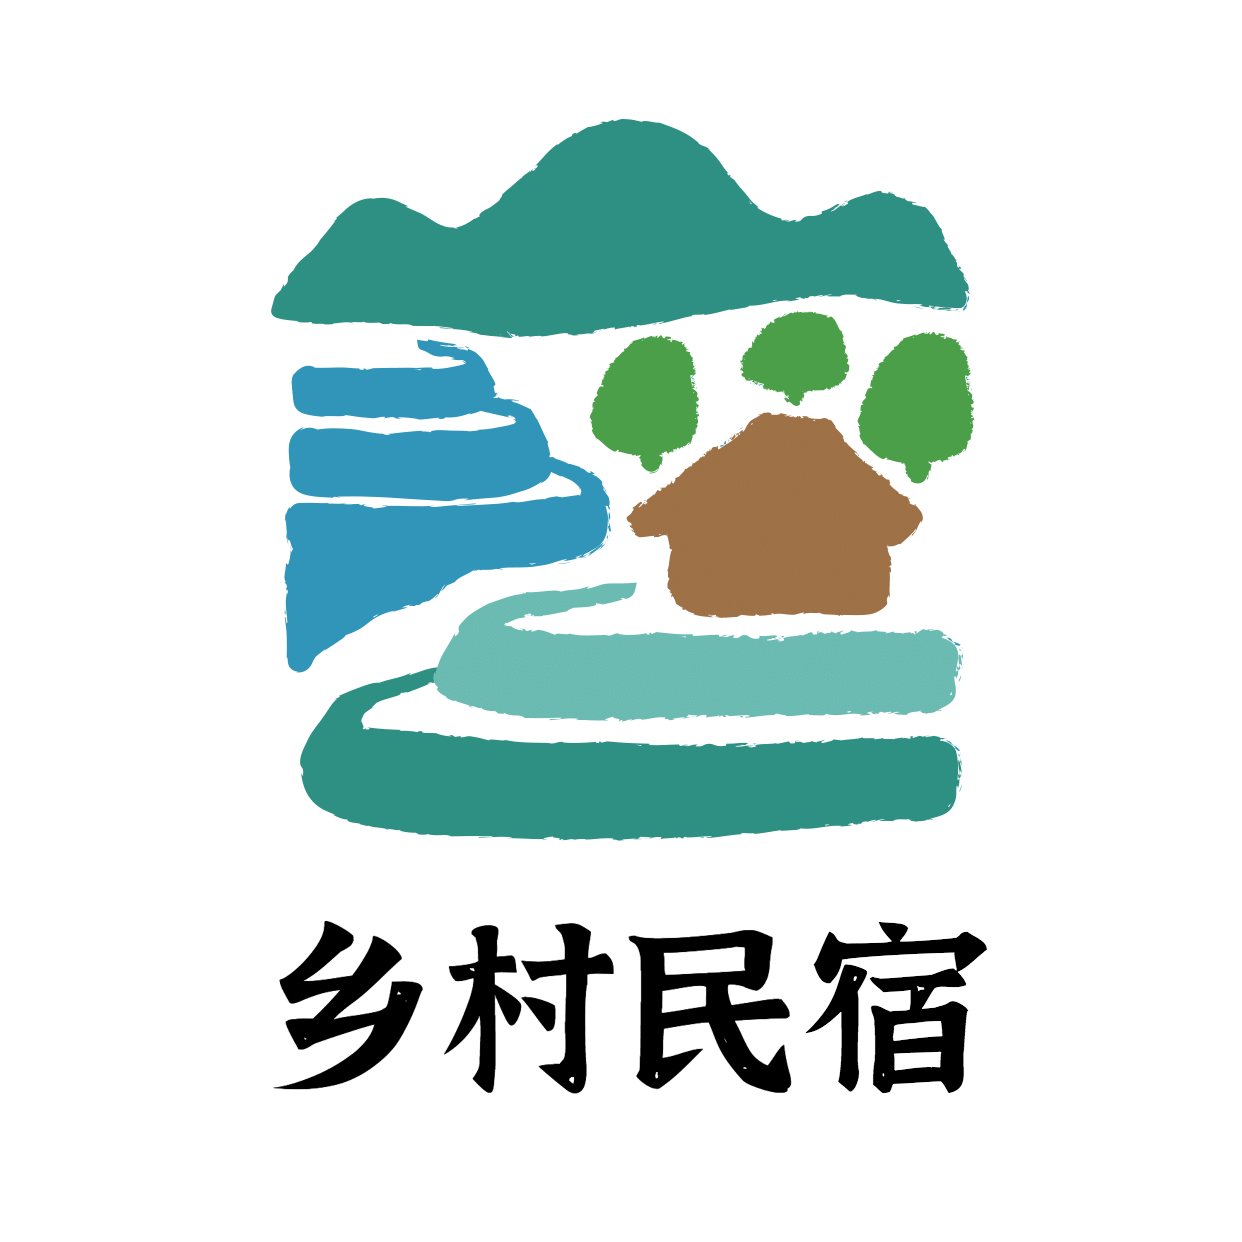 旅游乡村民宿酒店简约手绘logo头像预览效果